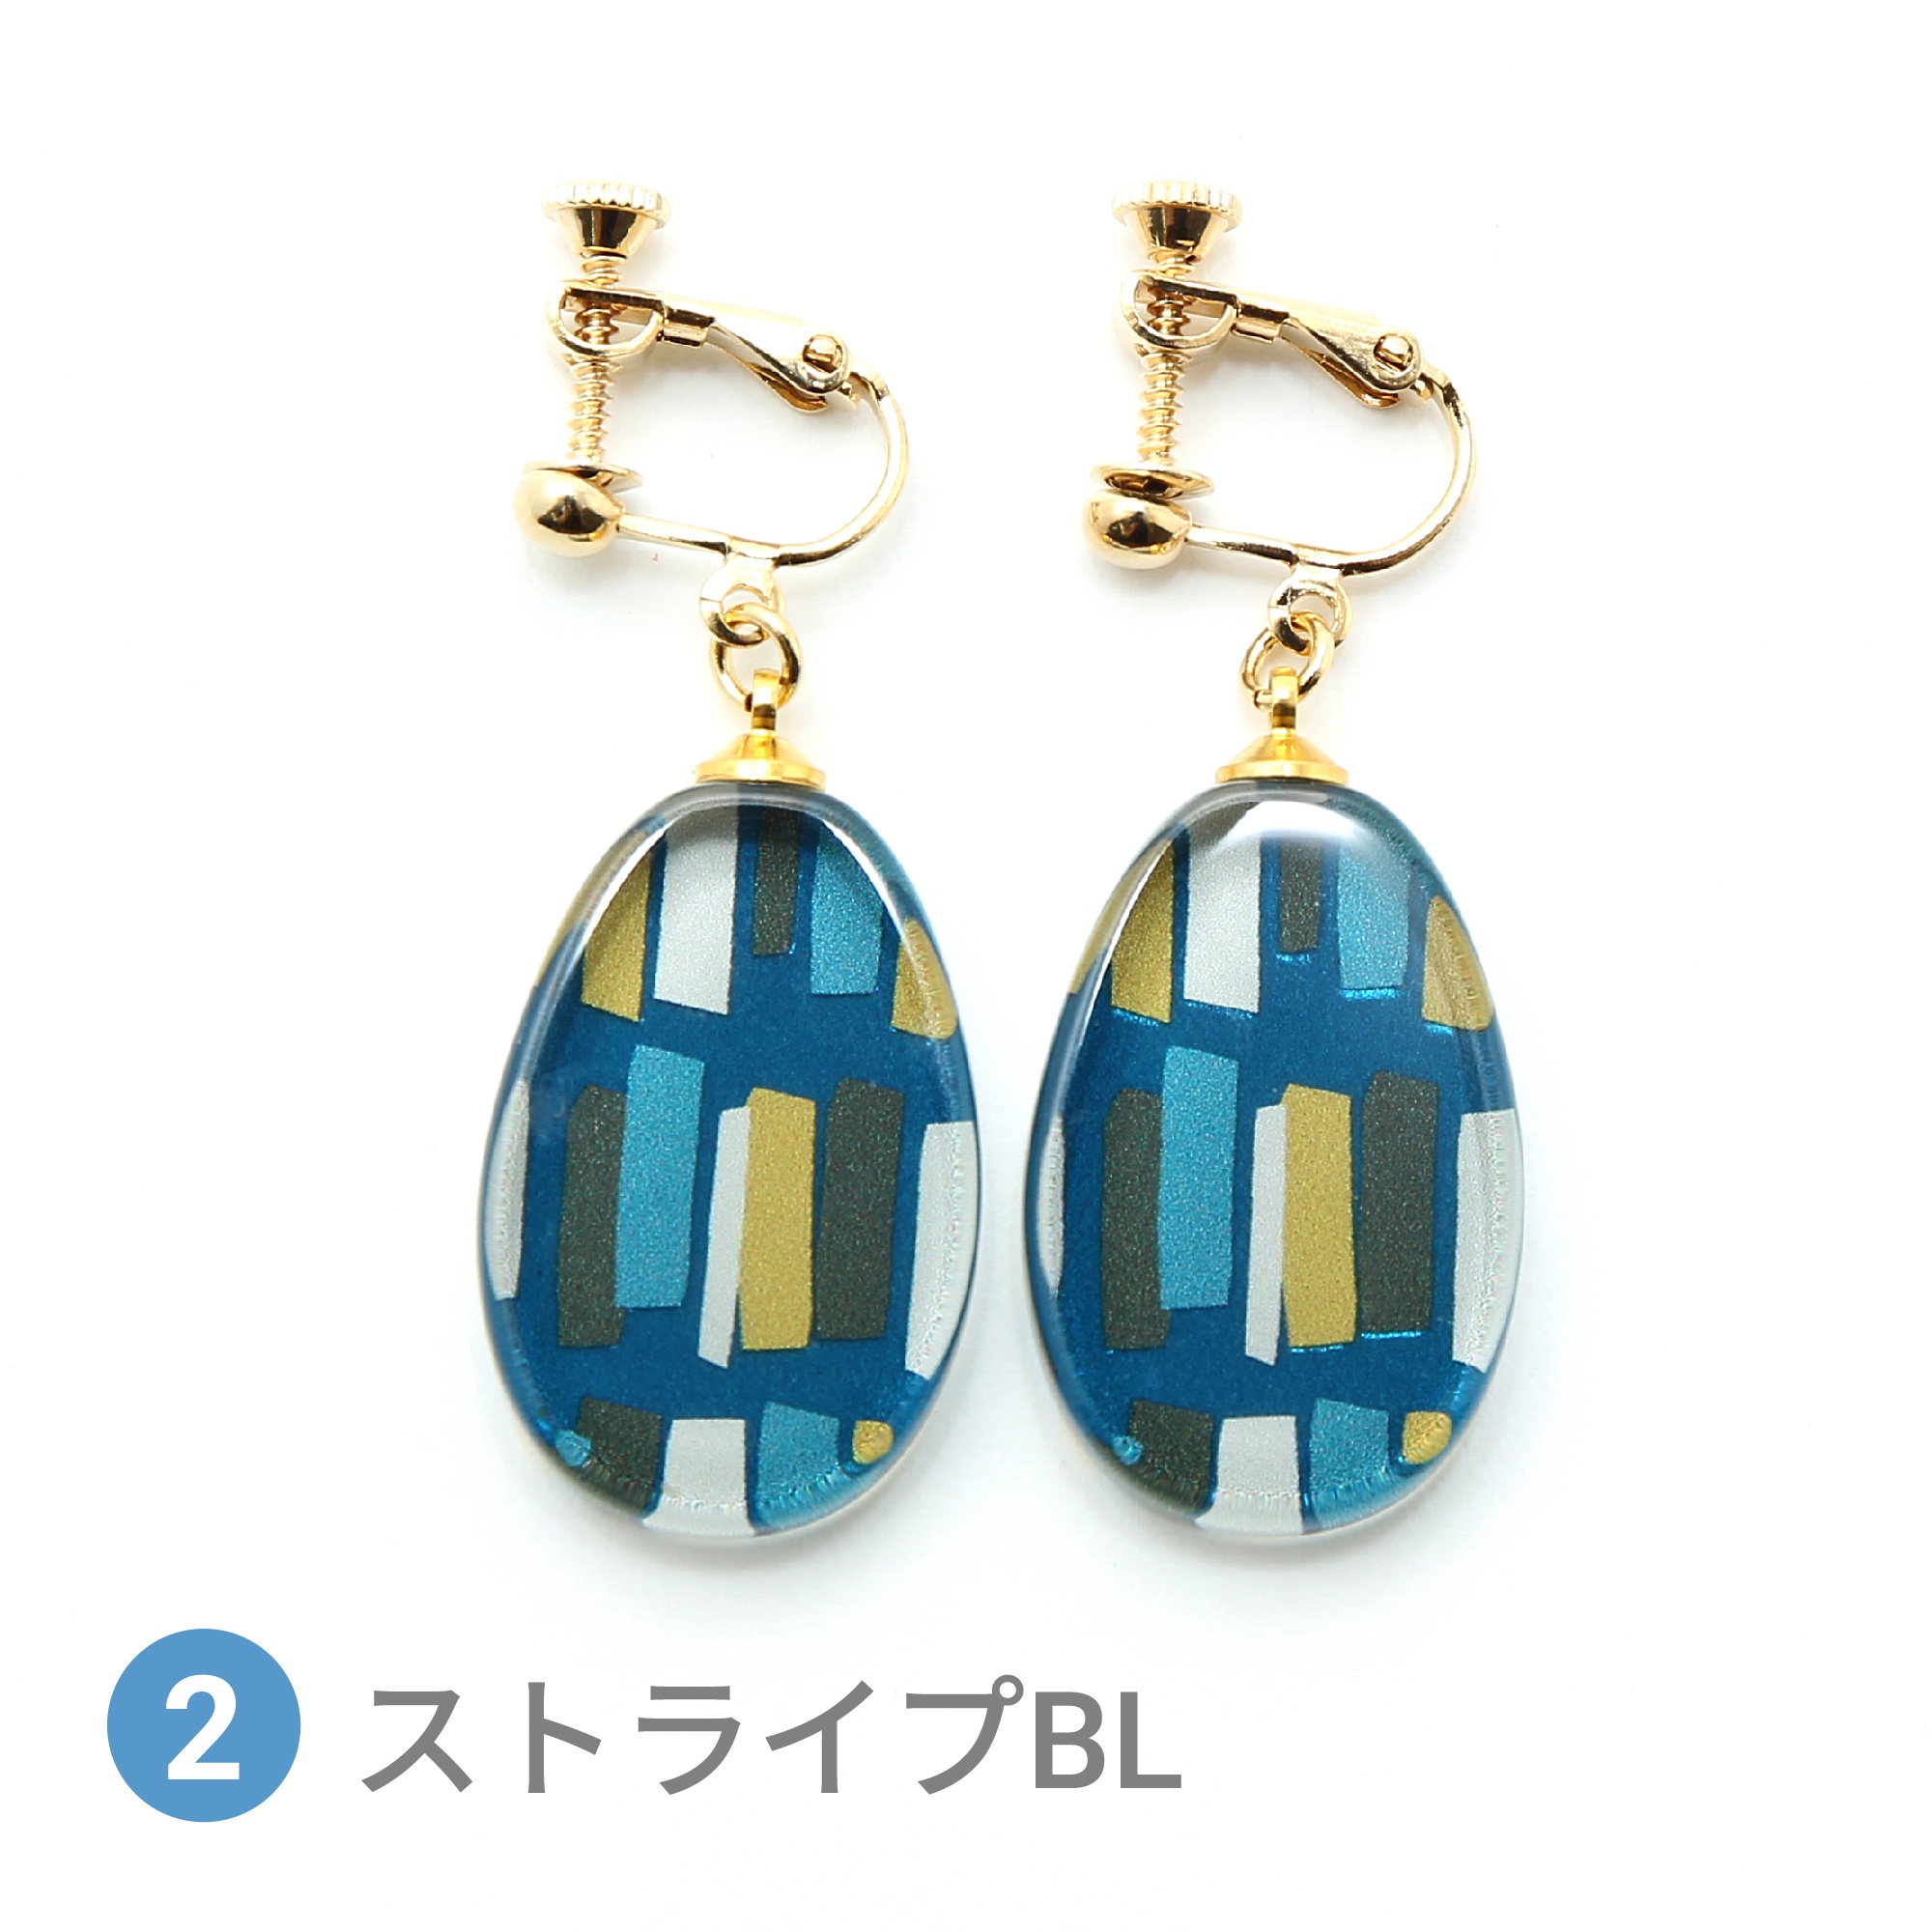 Glass accessories Earring SCANDINAVIAN stripe blue drop shape